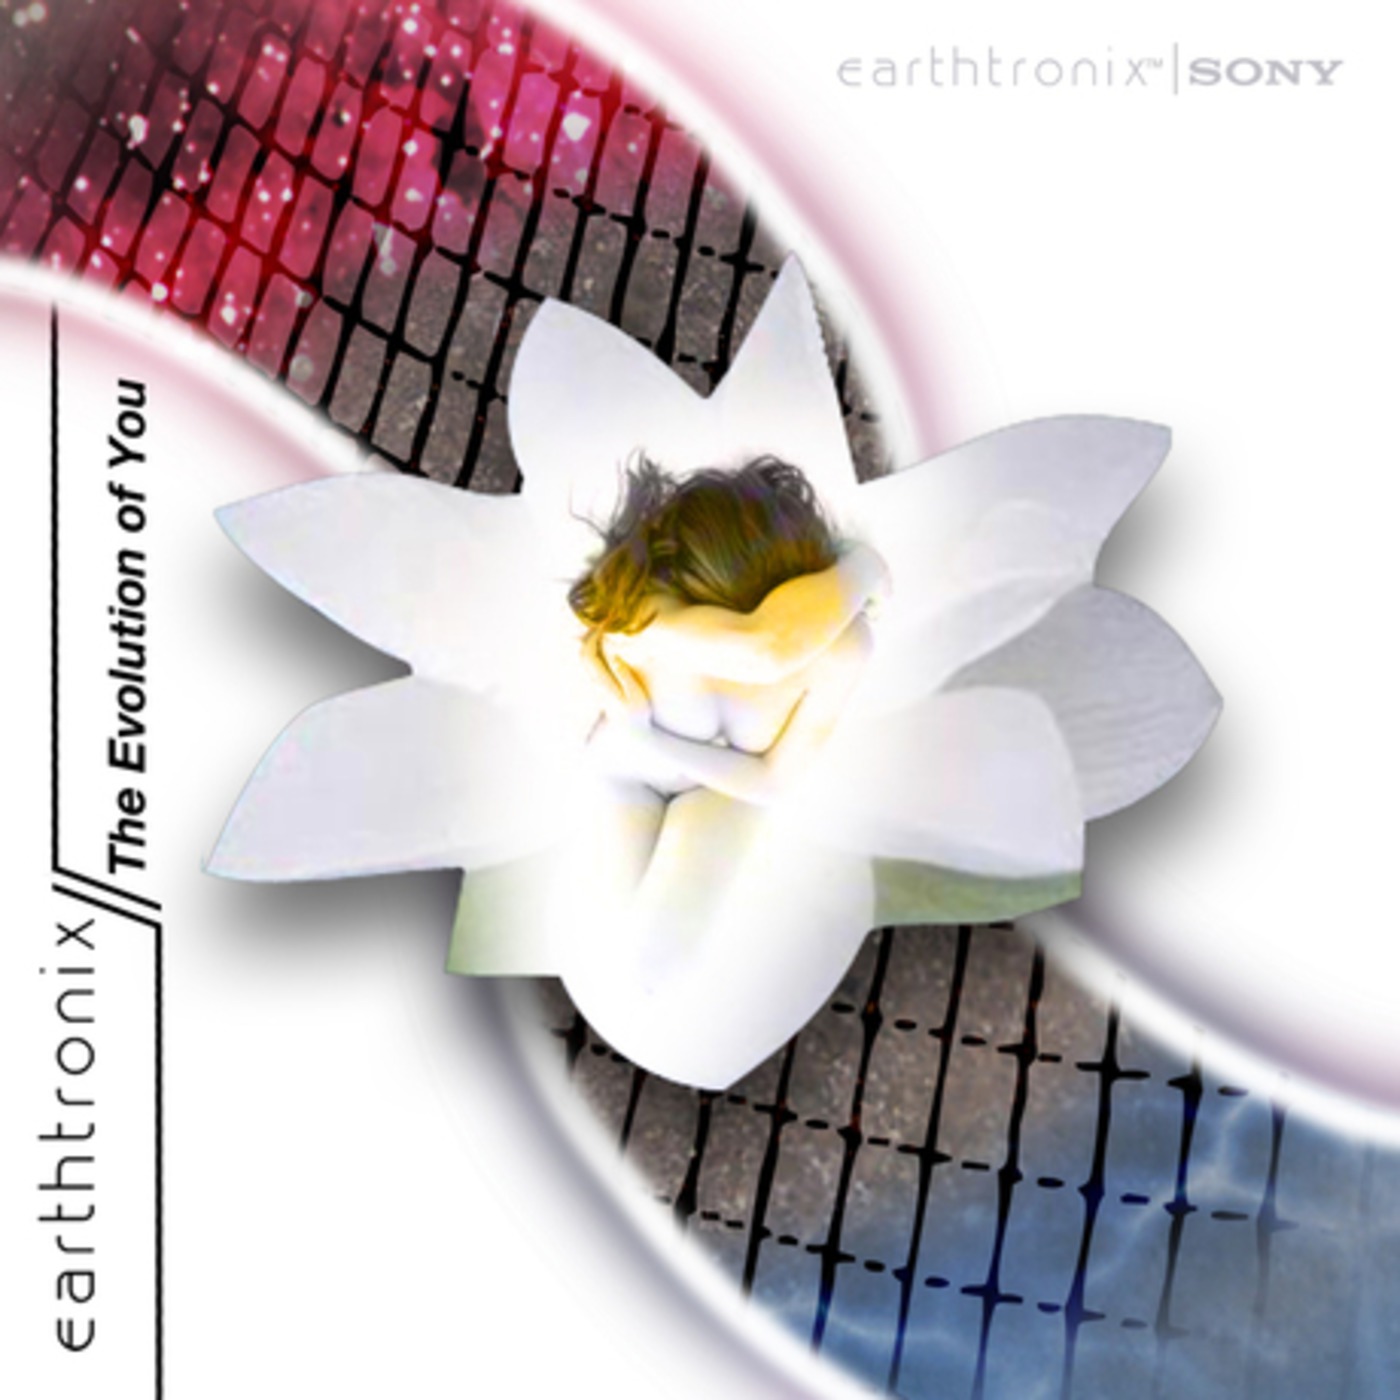 Earthtronix - The Unkown Unseen EP